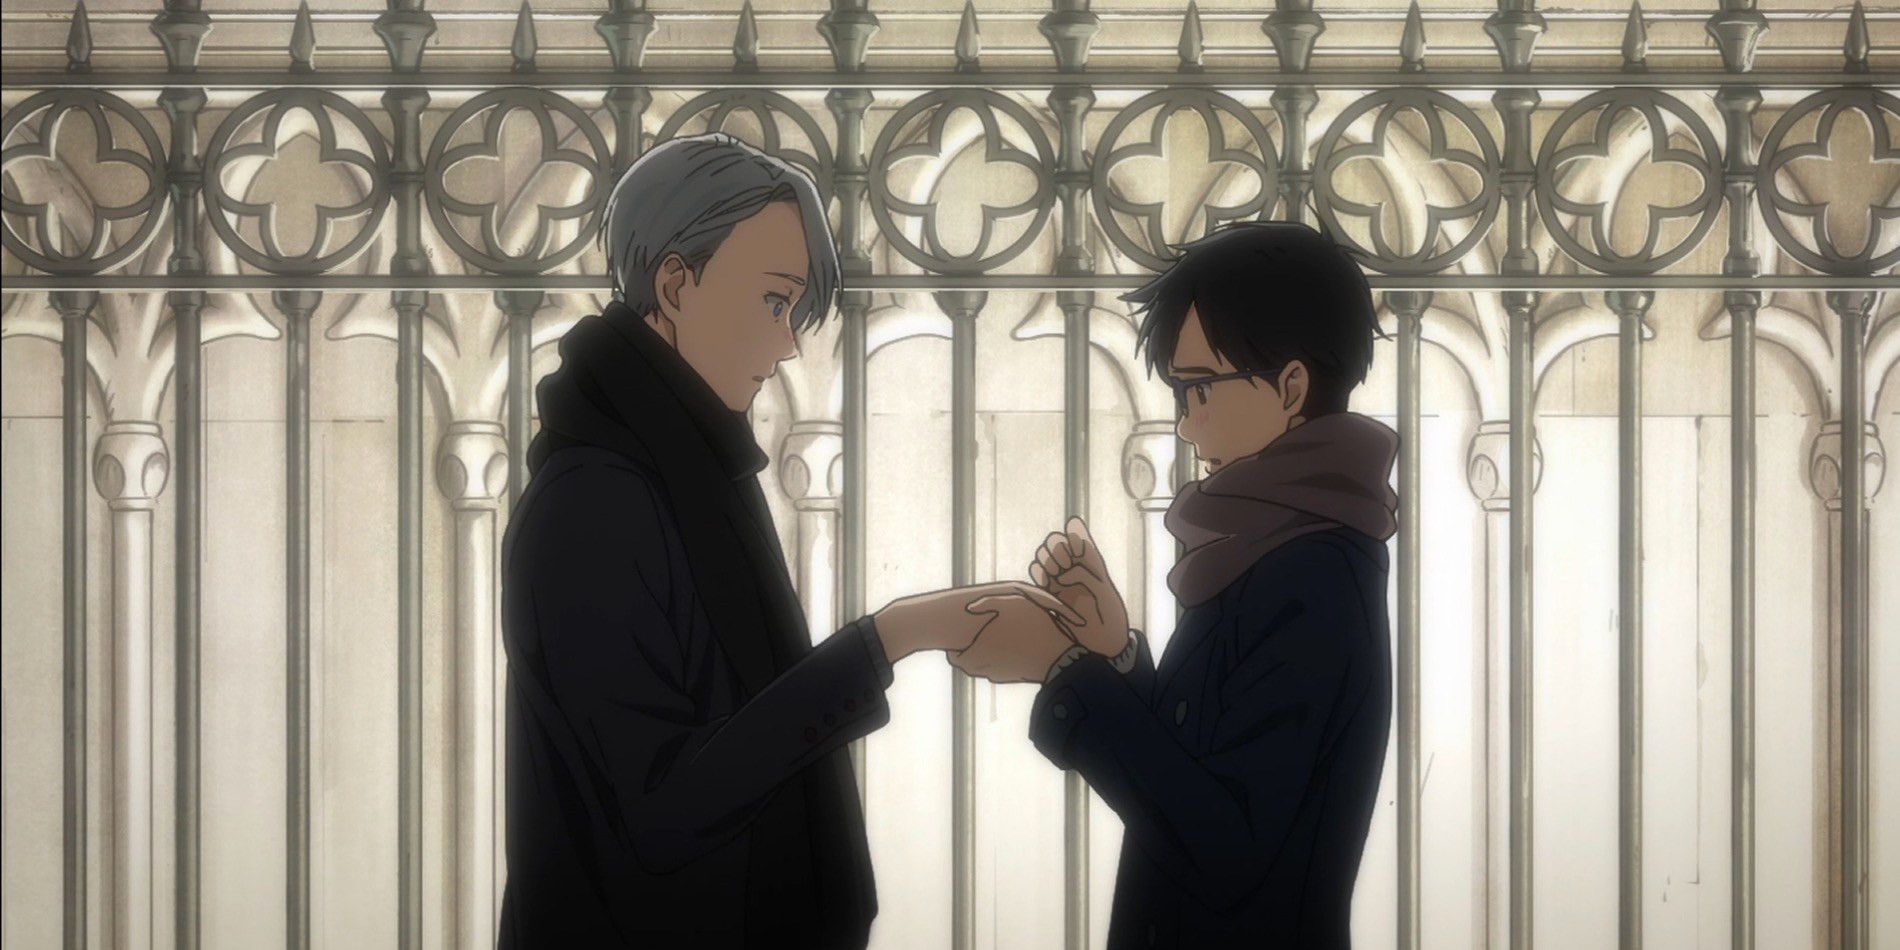 ¡¡¡Una captura de pantalla de Yuri !!!  Serie de anime On Ice de Yuri y Viktor parados frente a una puerta tomados de la mano.